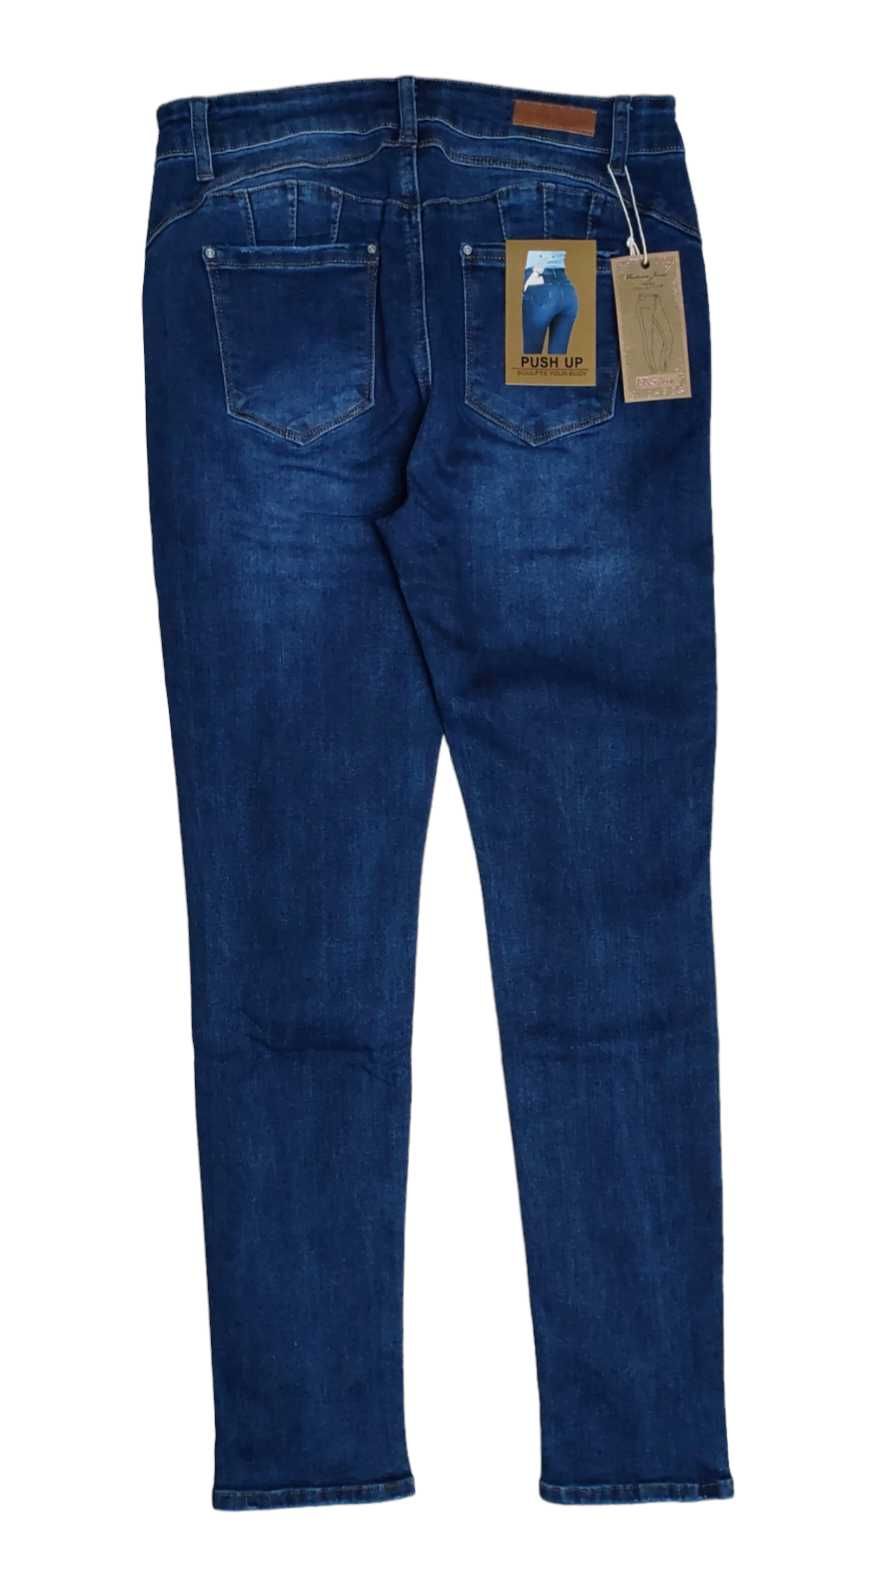 Spodnie jeansowe damskie, R. 38